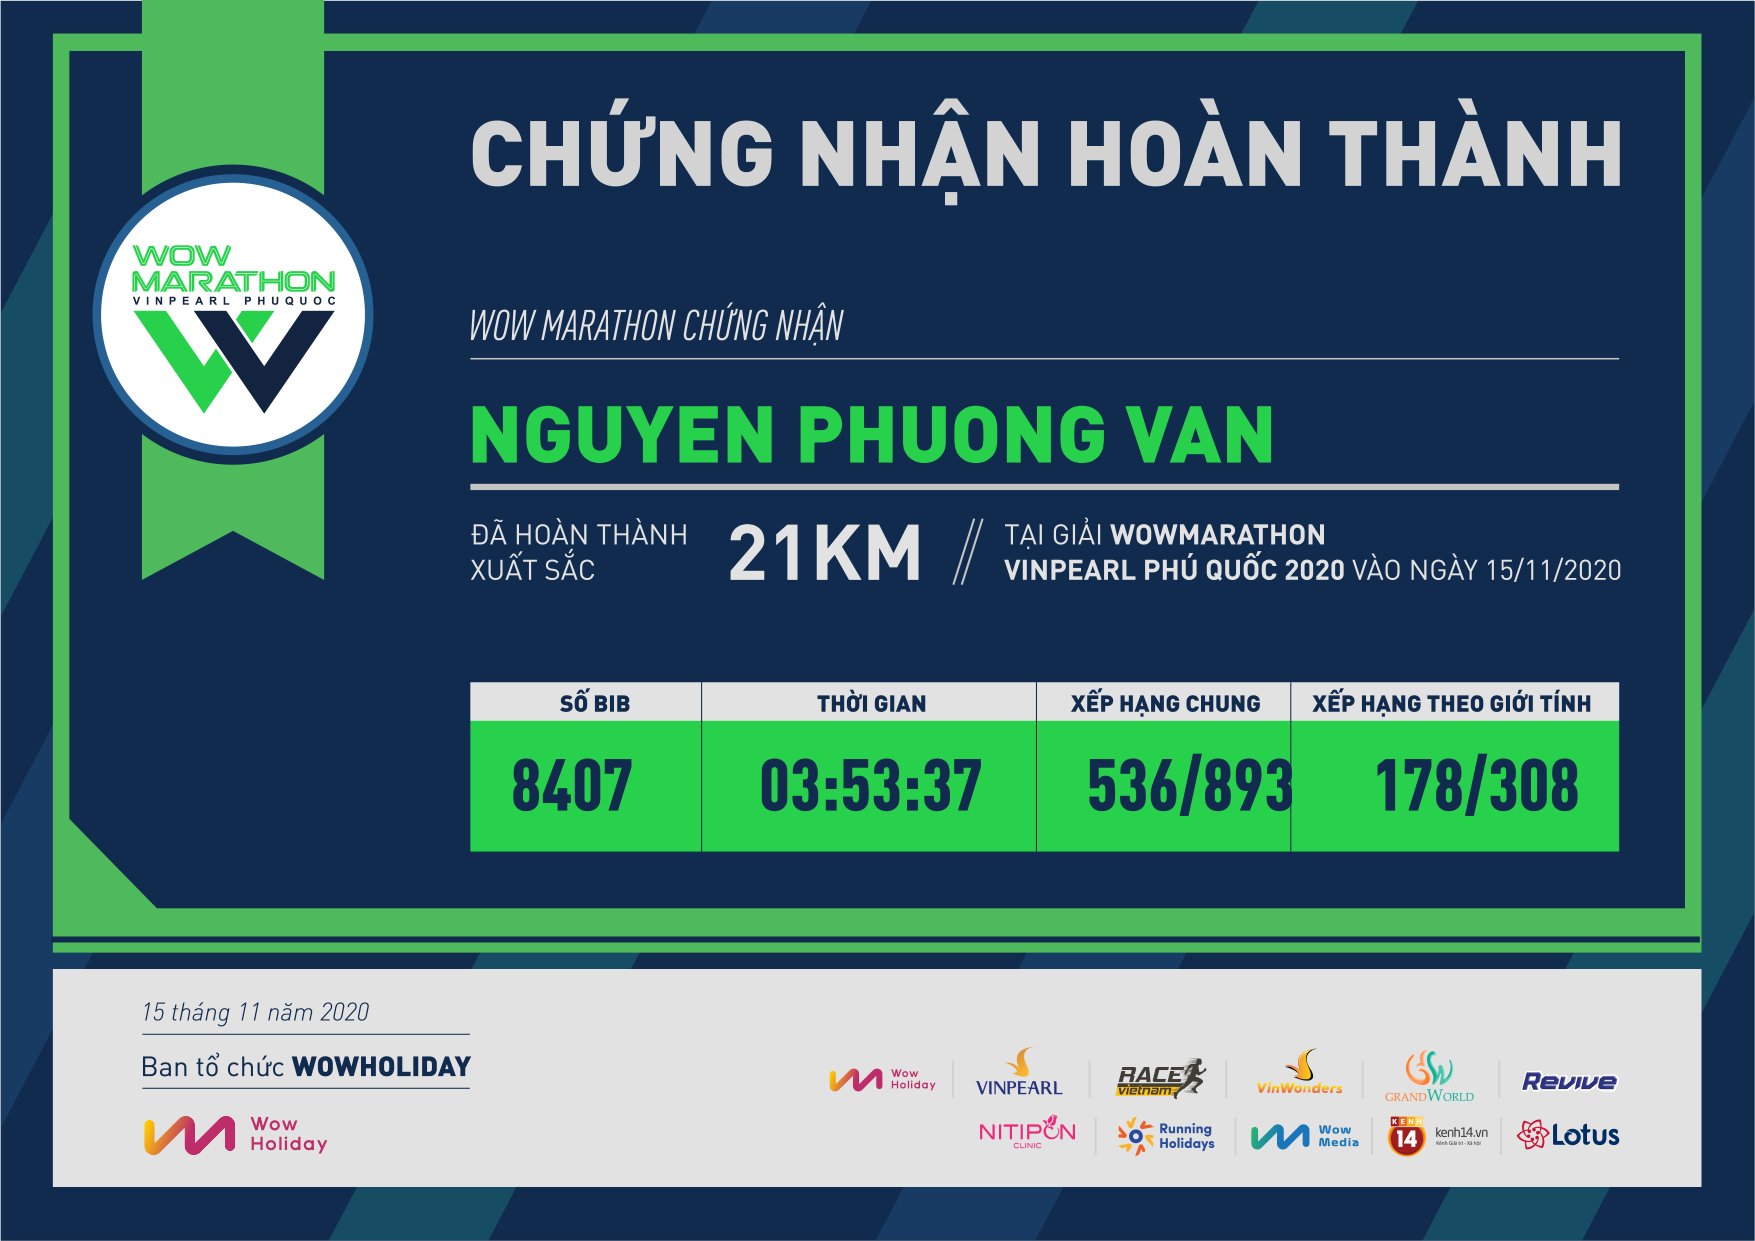 8407 - Nguyen Phuong Van